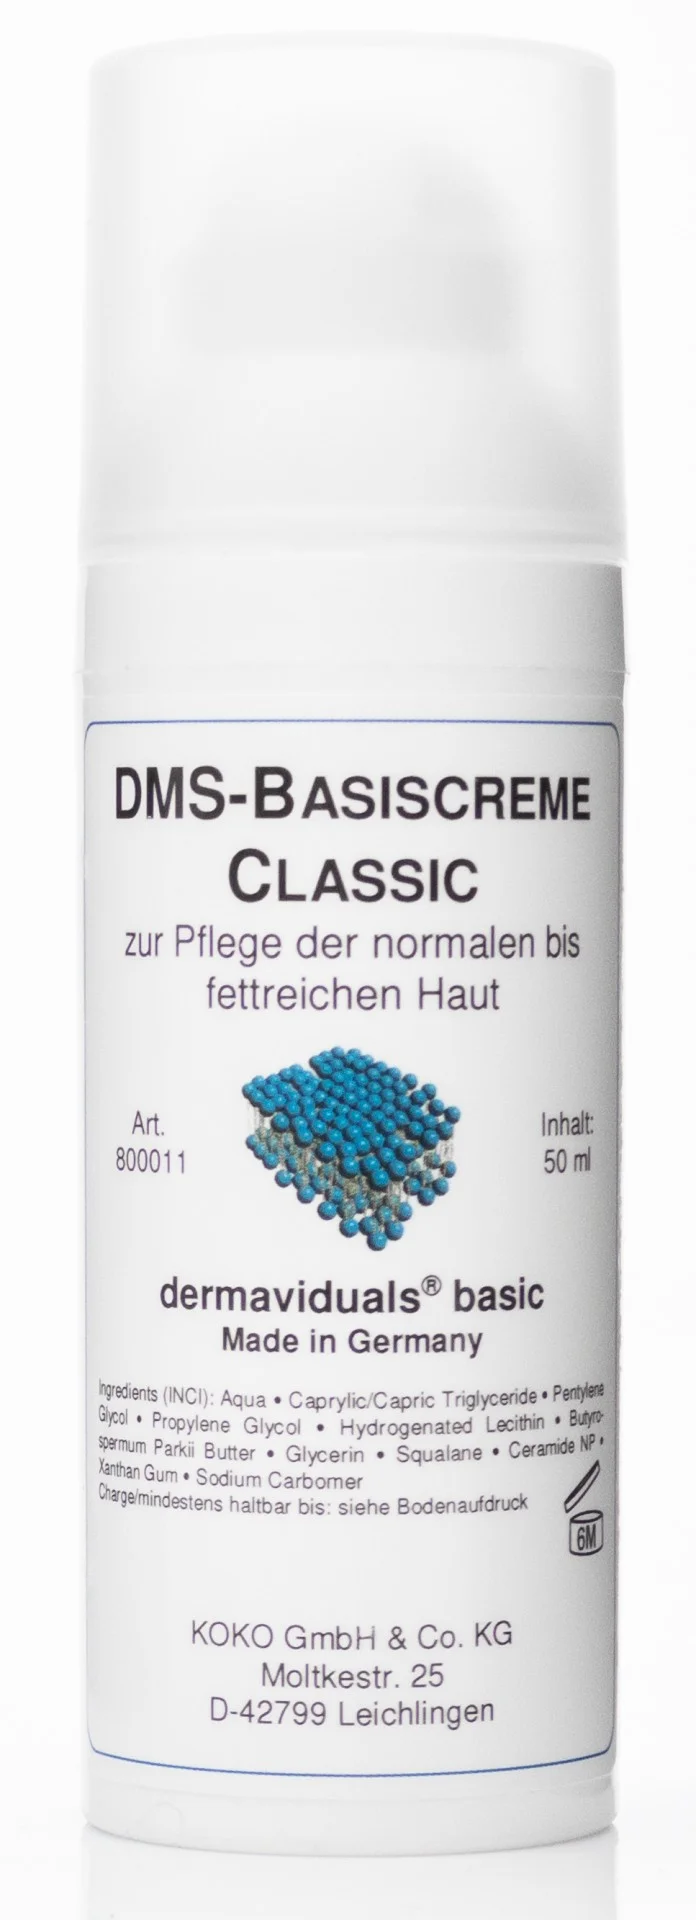 DMS classic crème